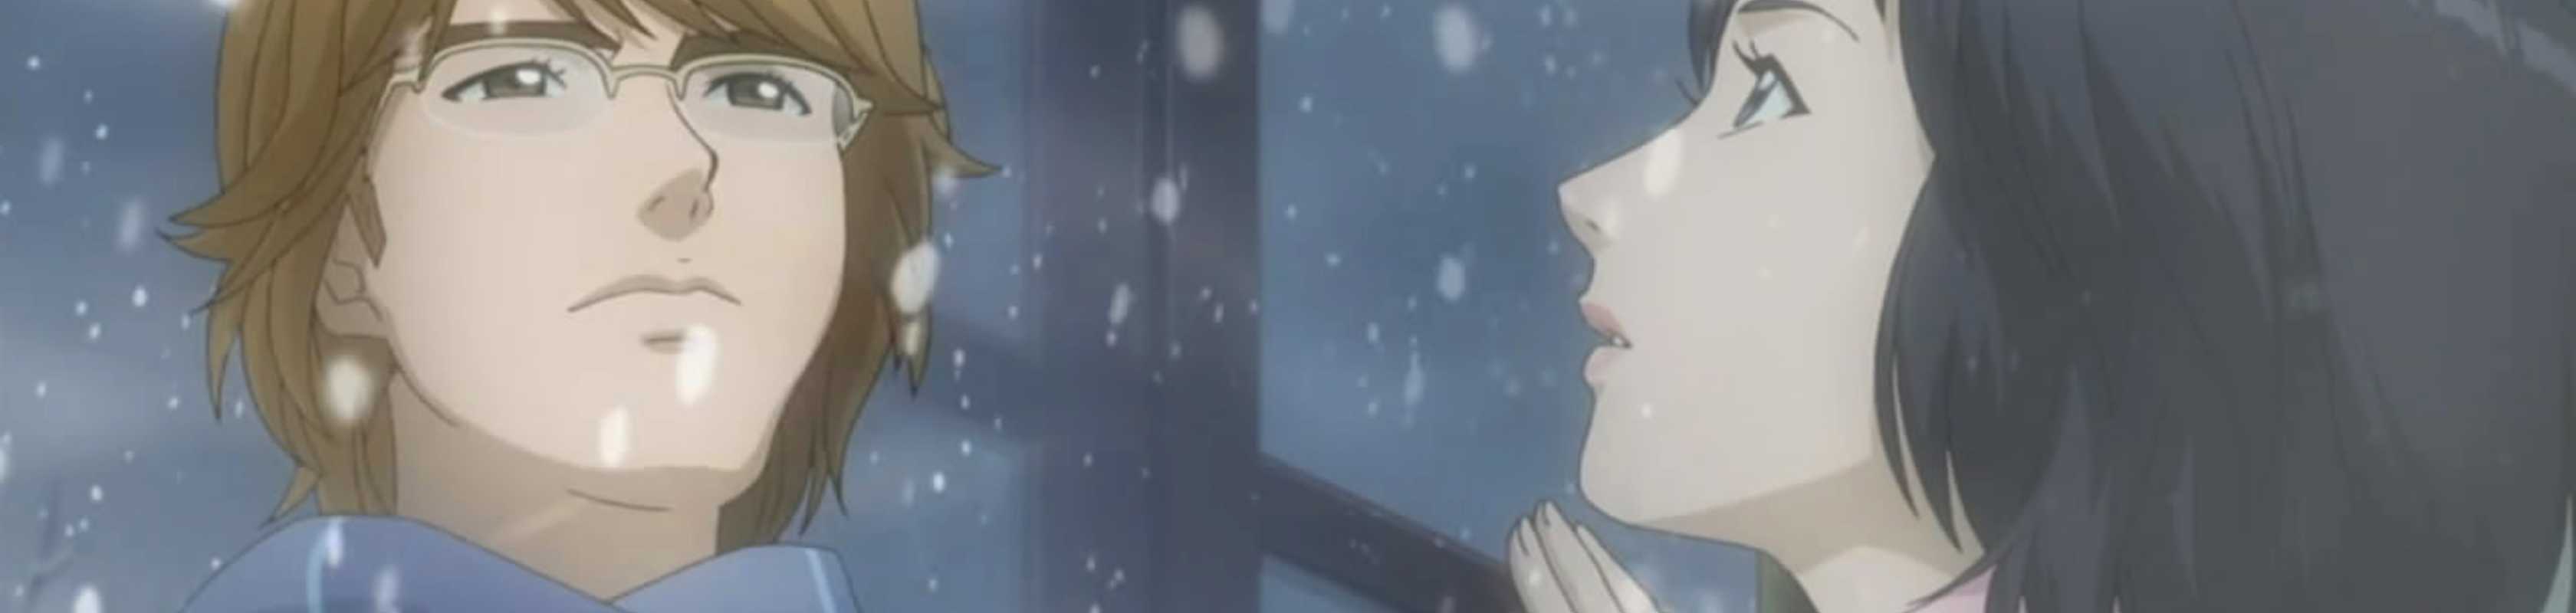 Winter Sonata's Bae Eyeing Kami no Shizuku Drama Role - News - Anime News  Network